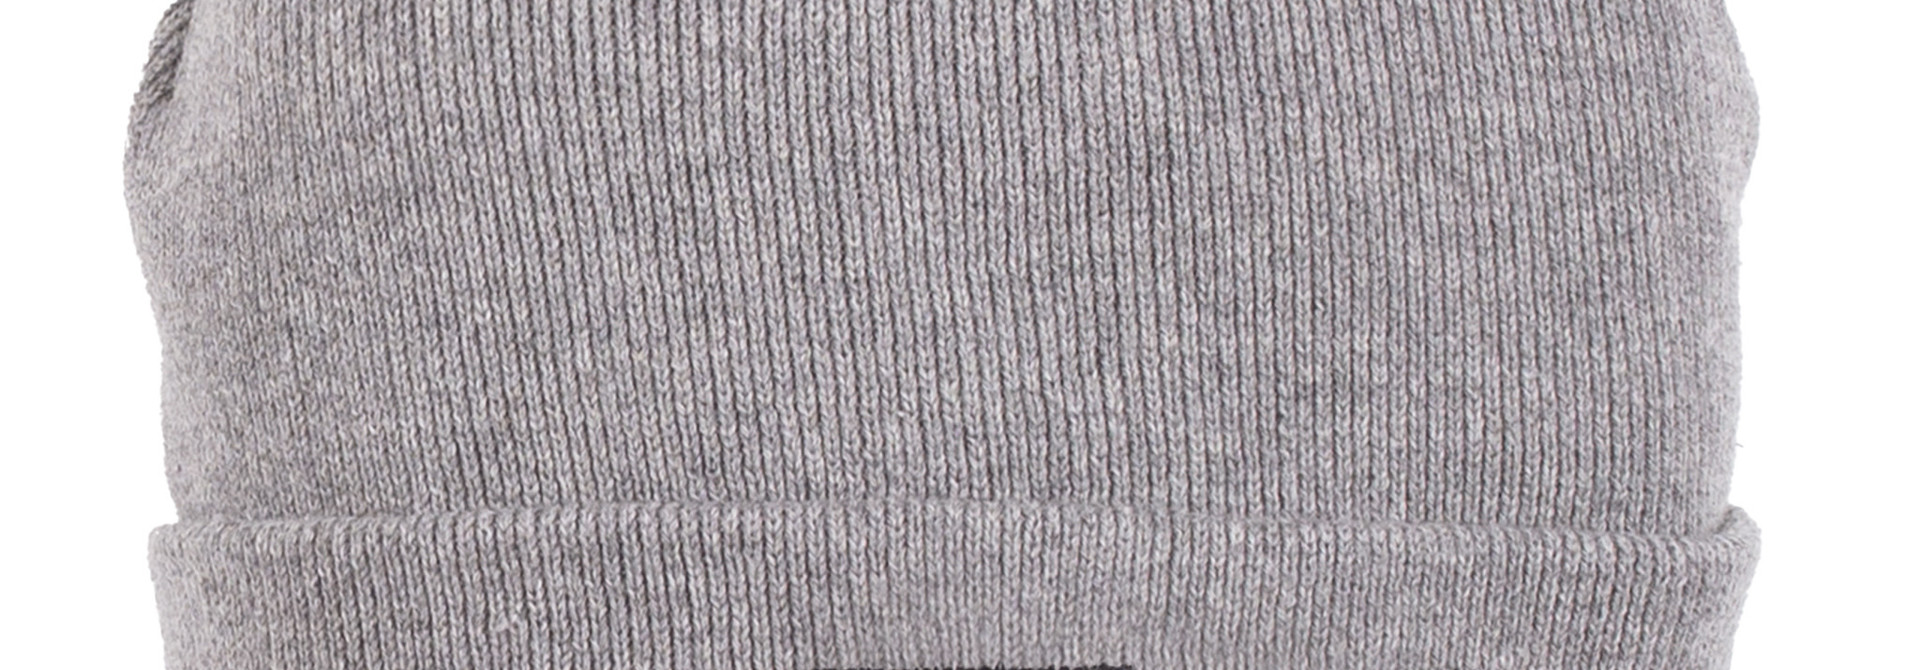 Tuque en tricot - F22 Mini Gris